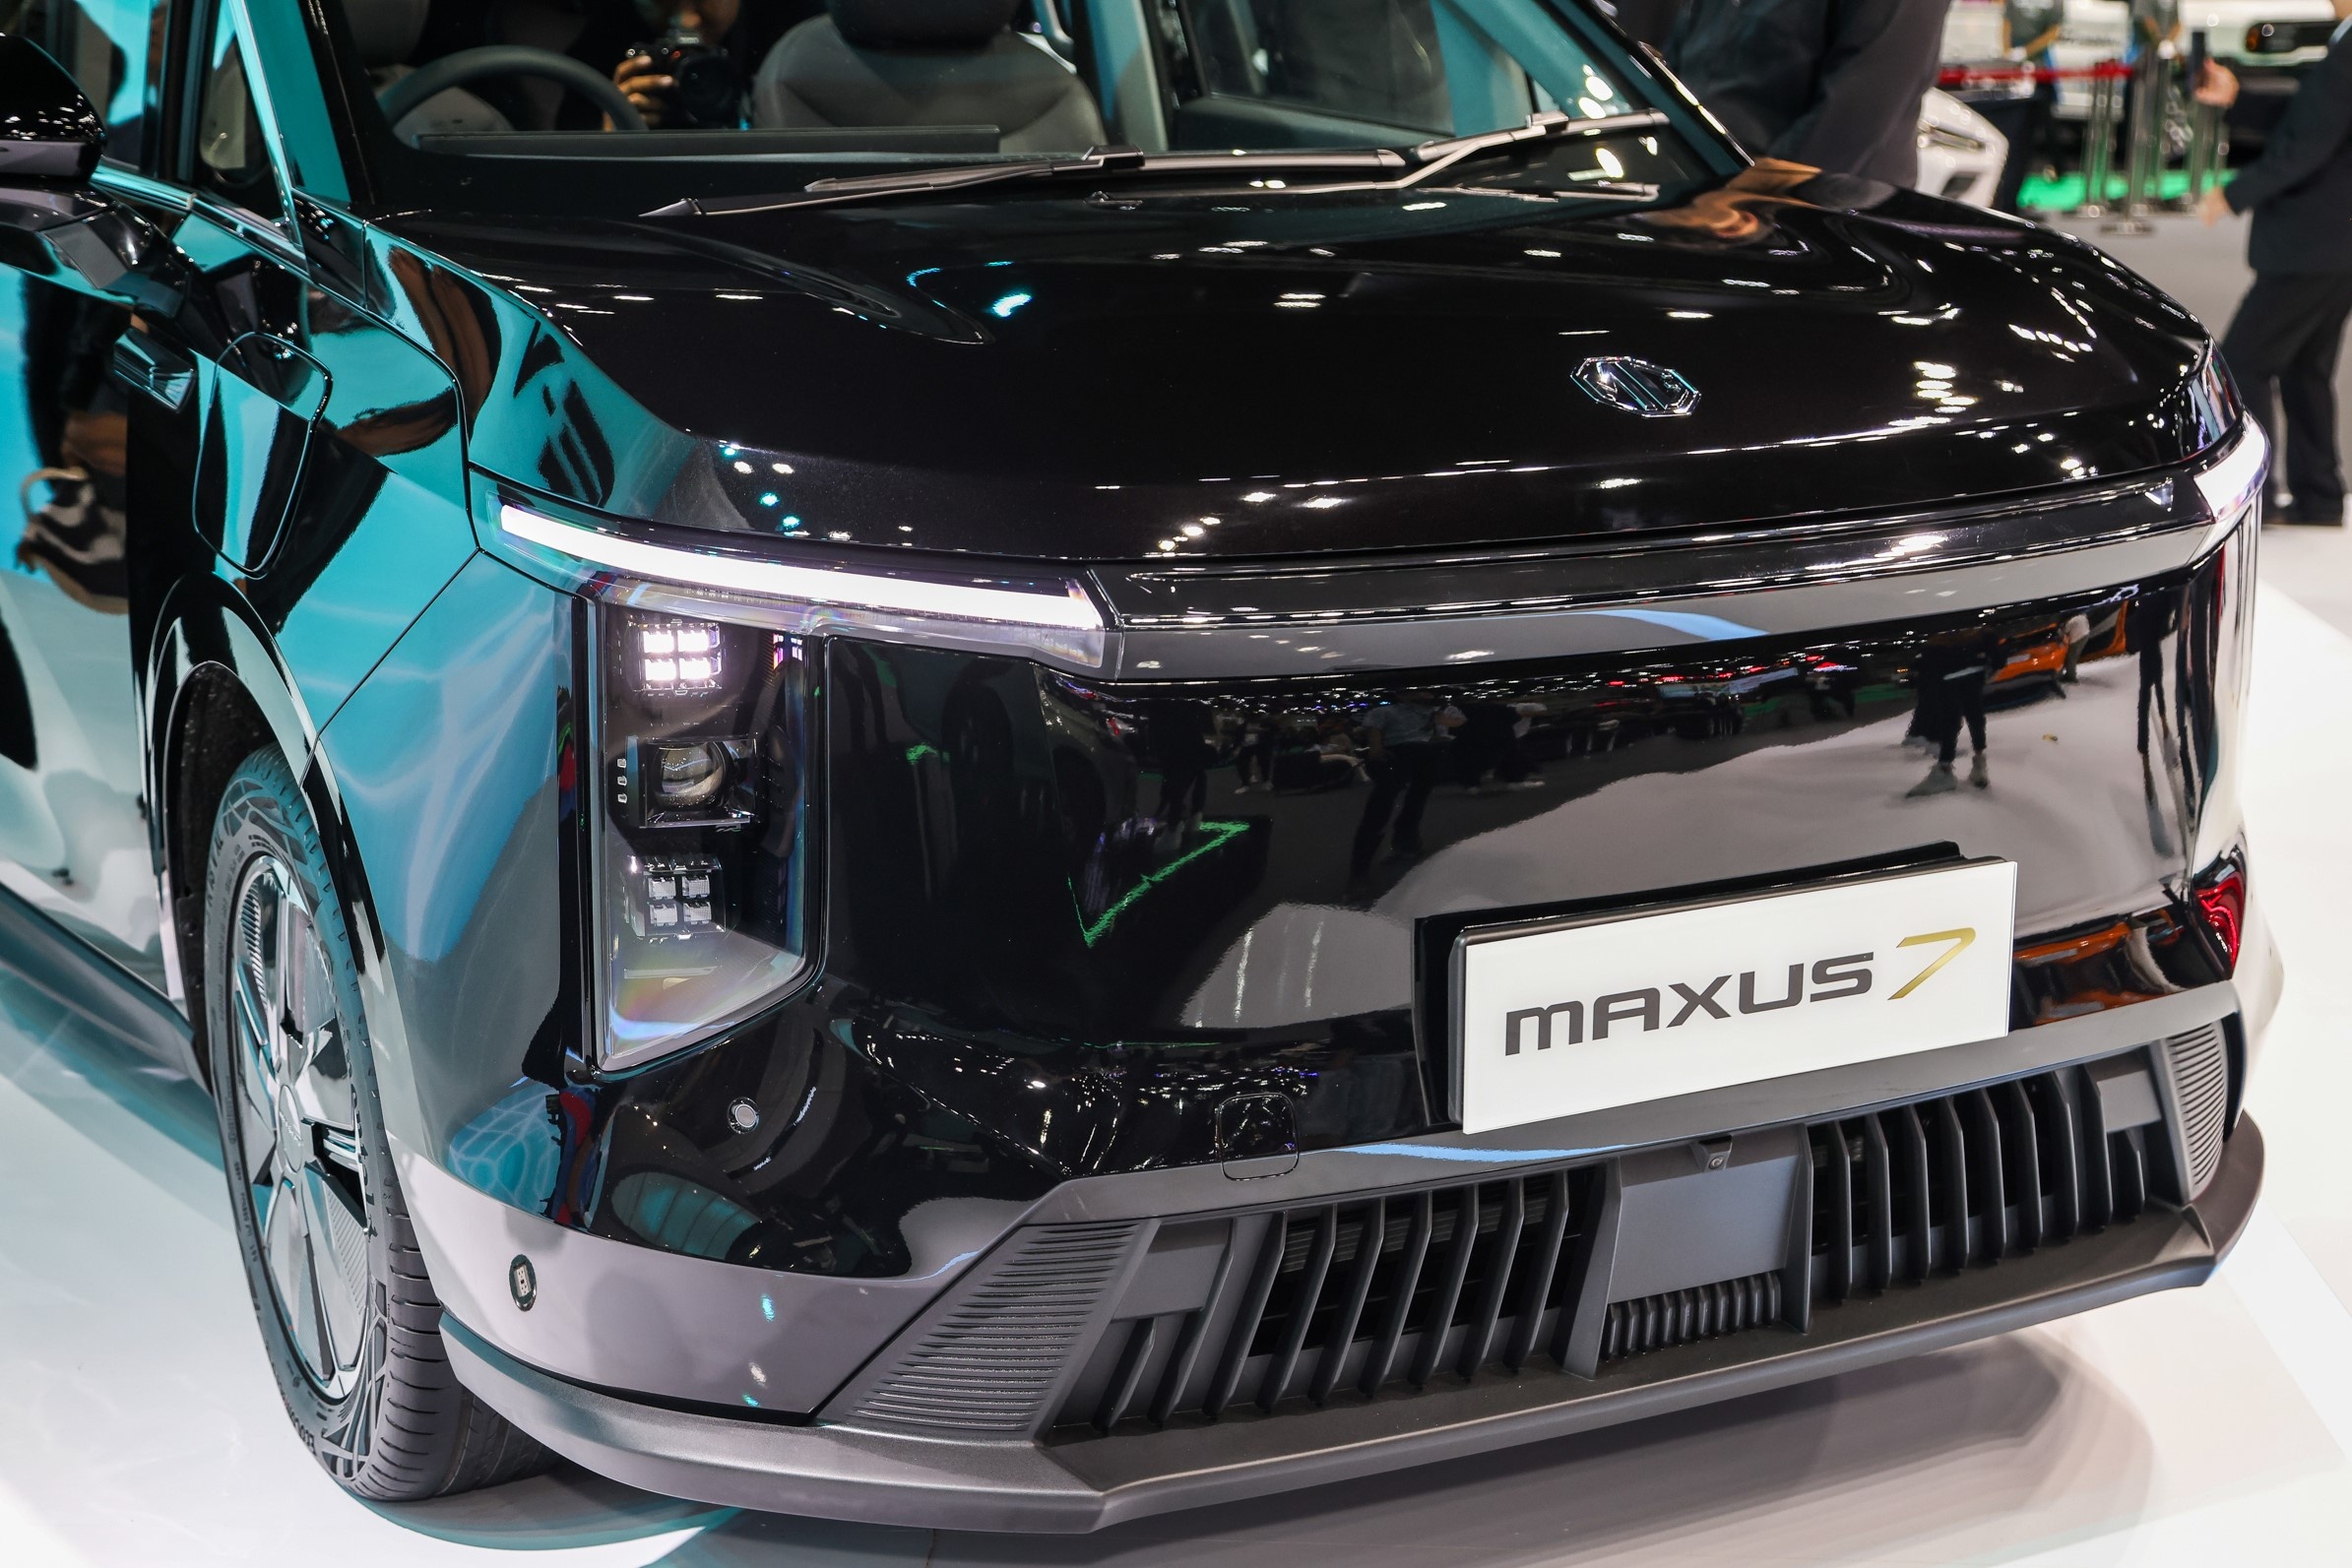 Cận cảnh MG Maxus 7 - đối thủ mới của Kia Carnival - ảnh 2